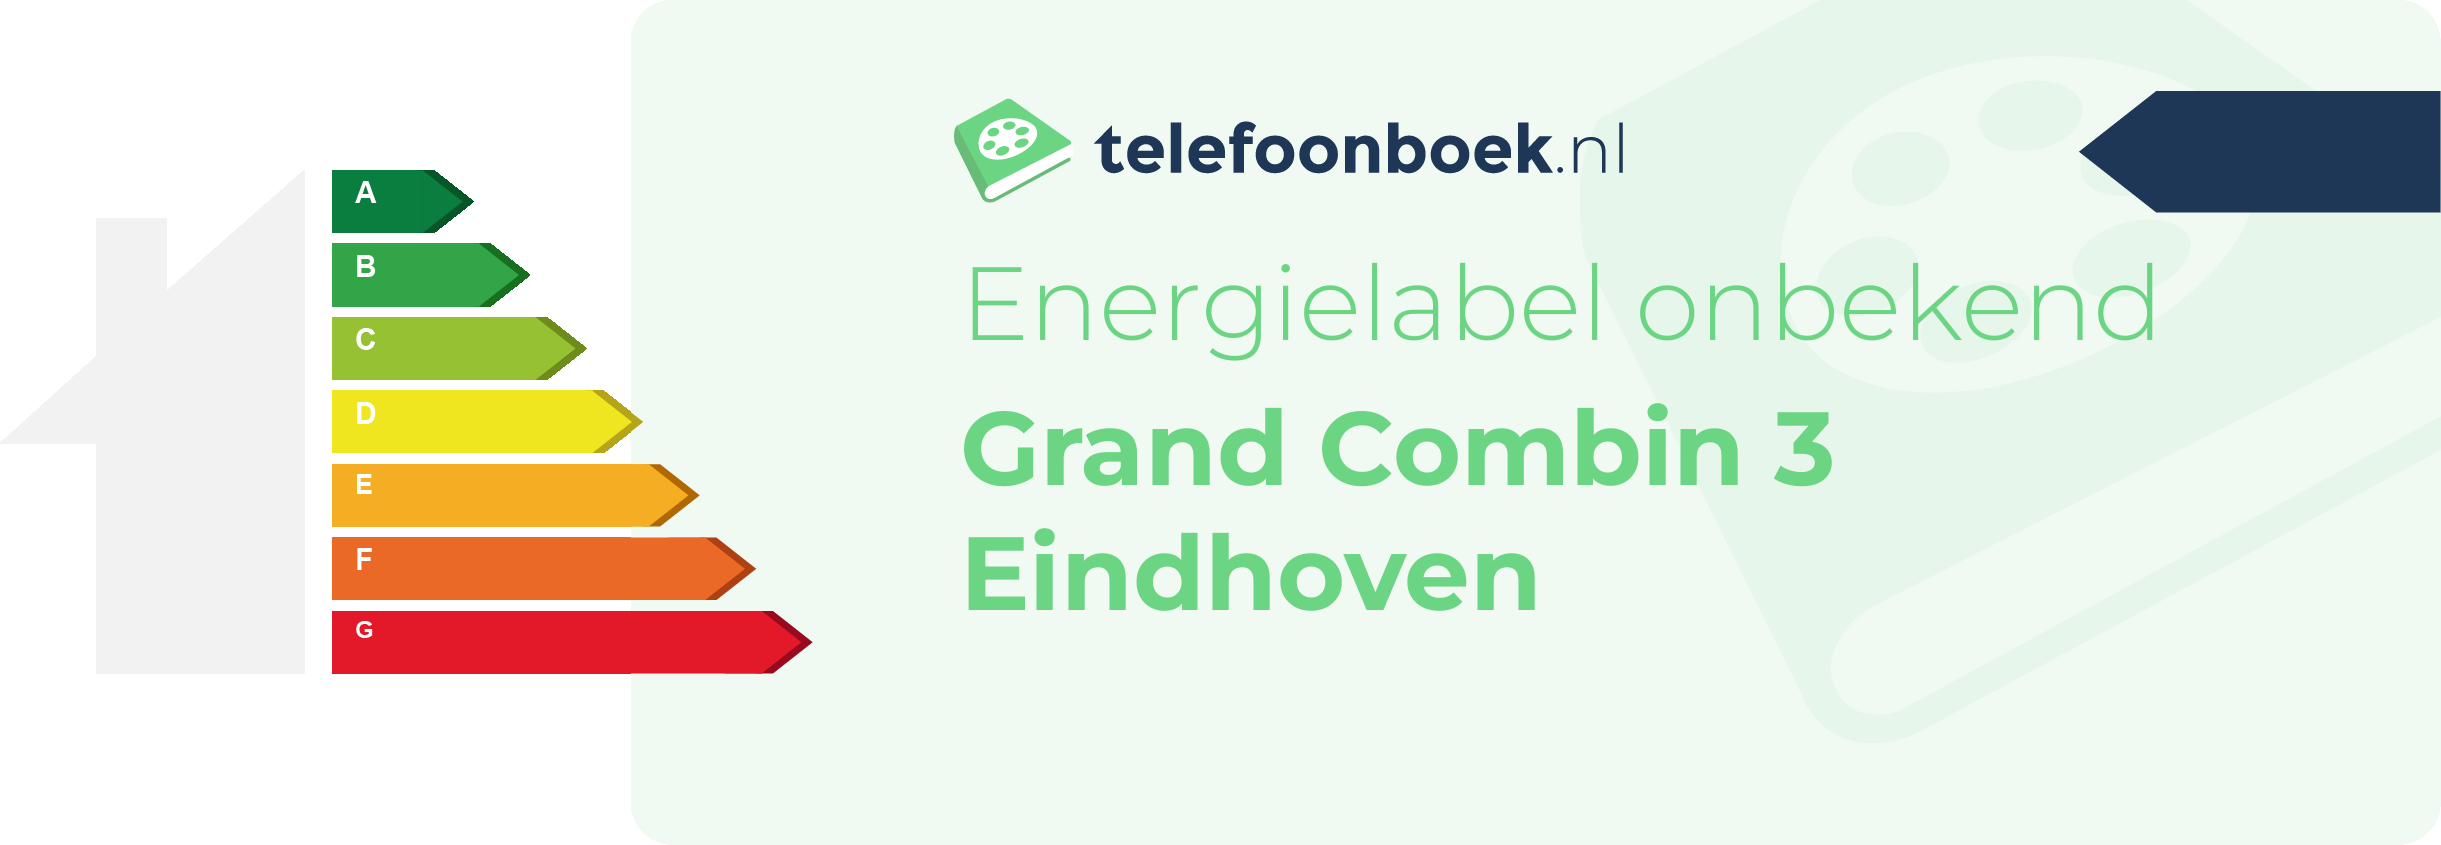 Energielabel Grand Combin 3 Eindhoven